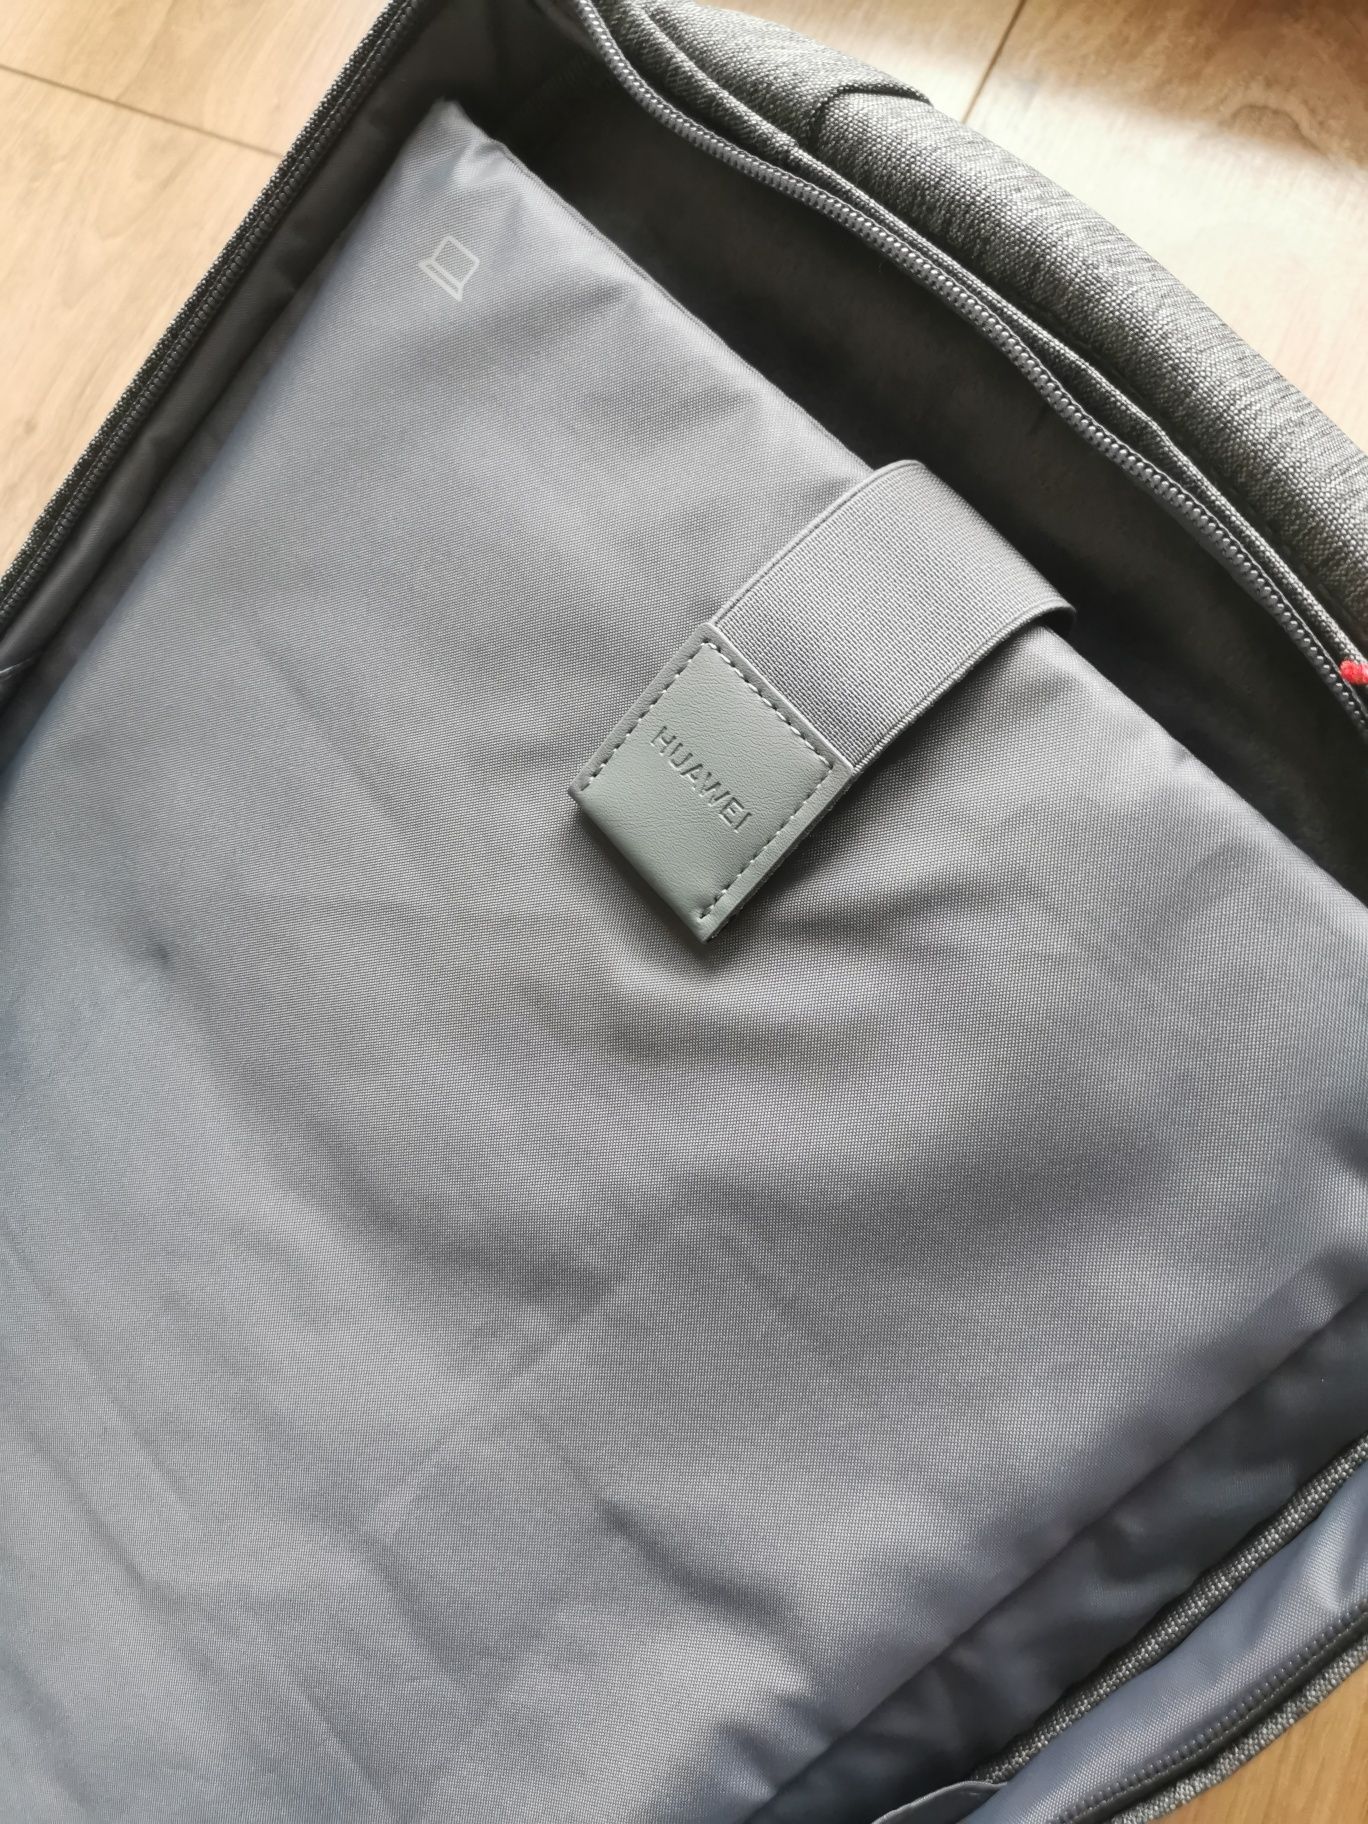 Nowy plecak Huawei Backpack na laptop